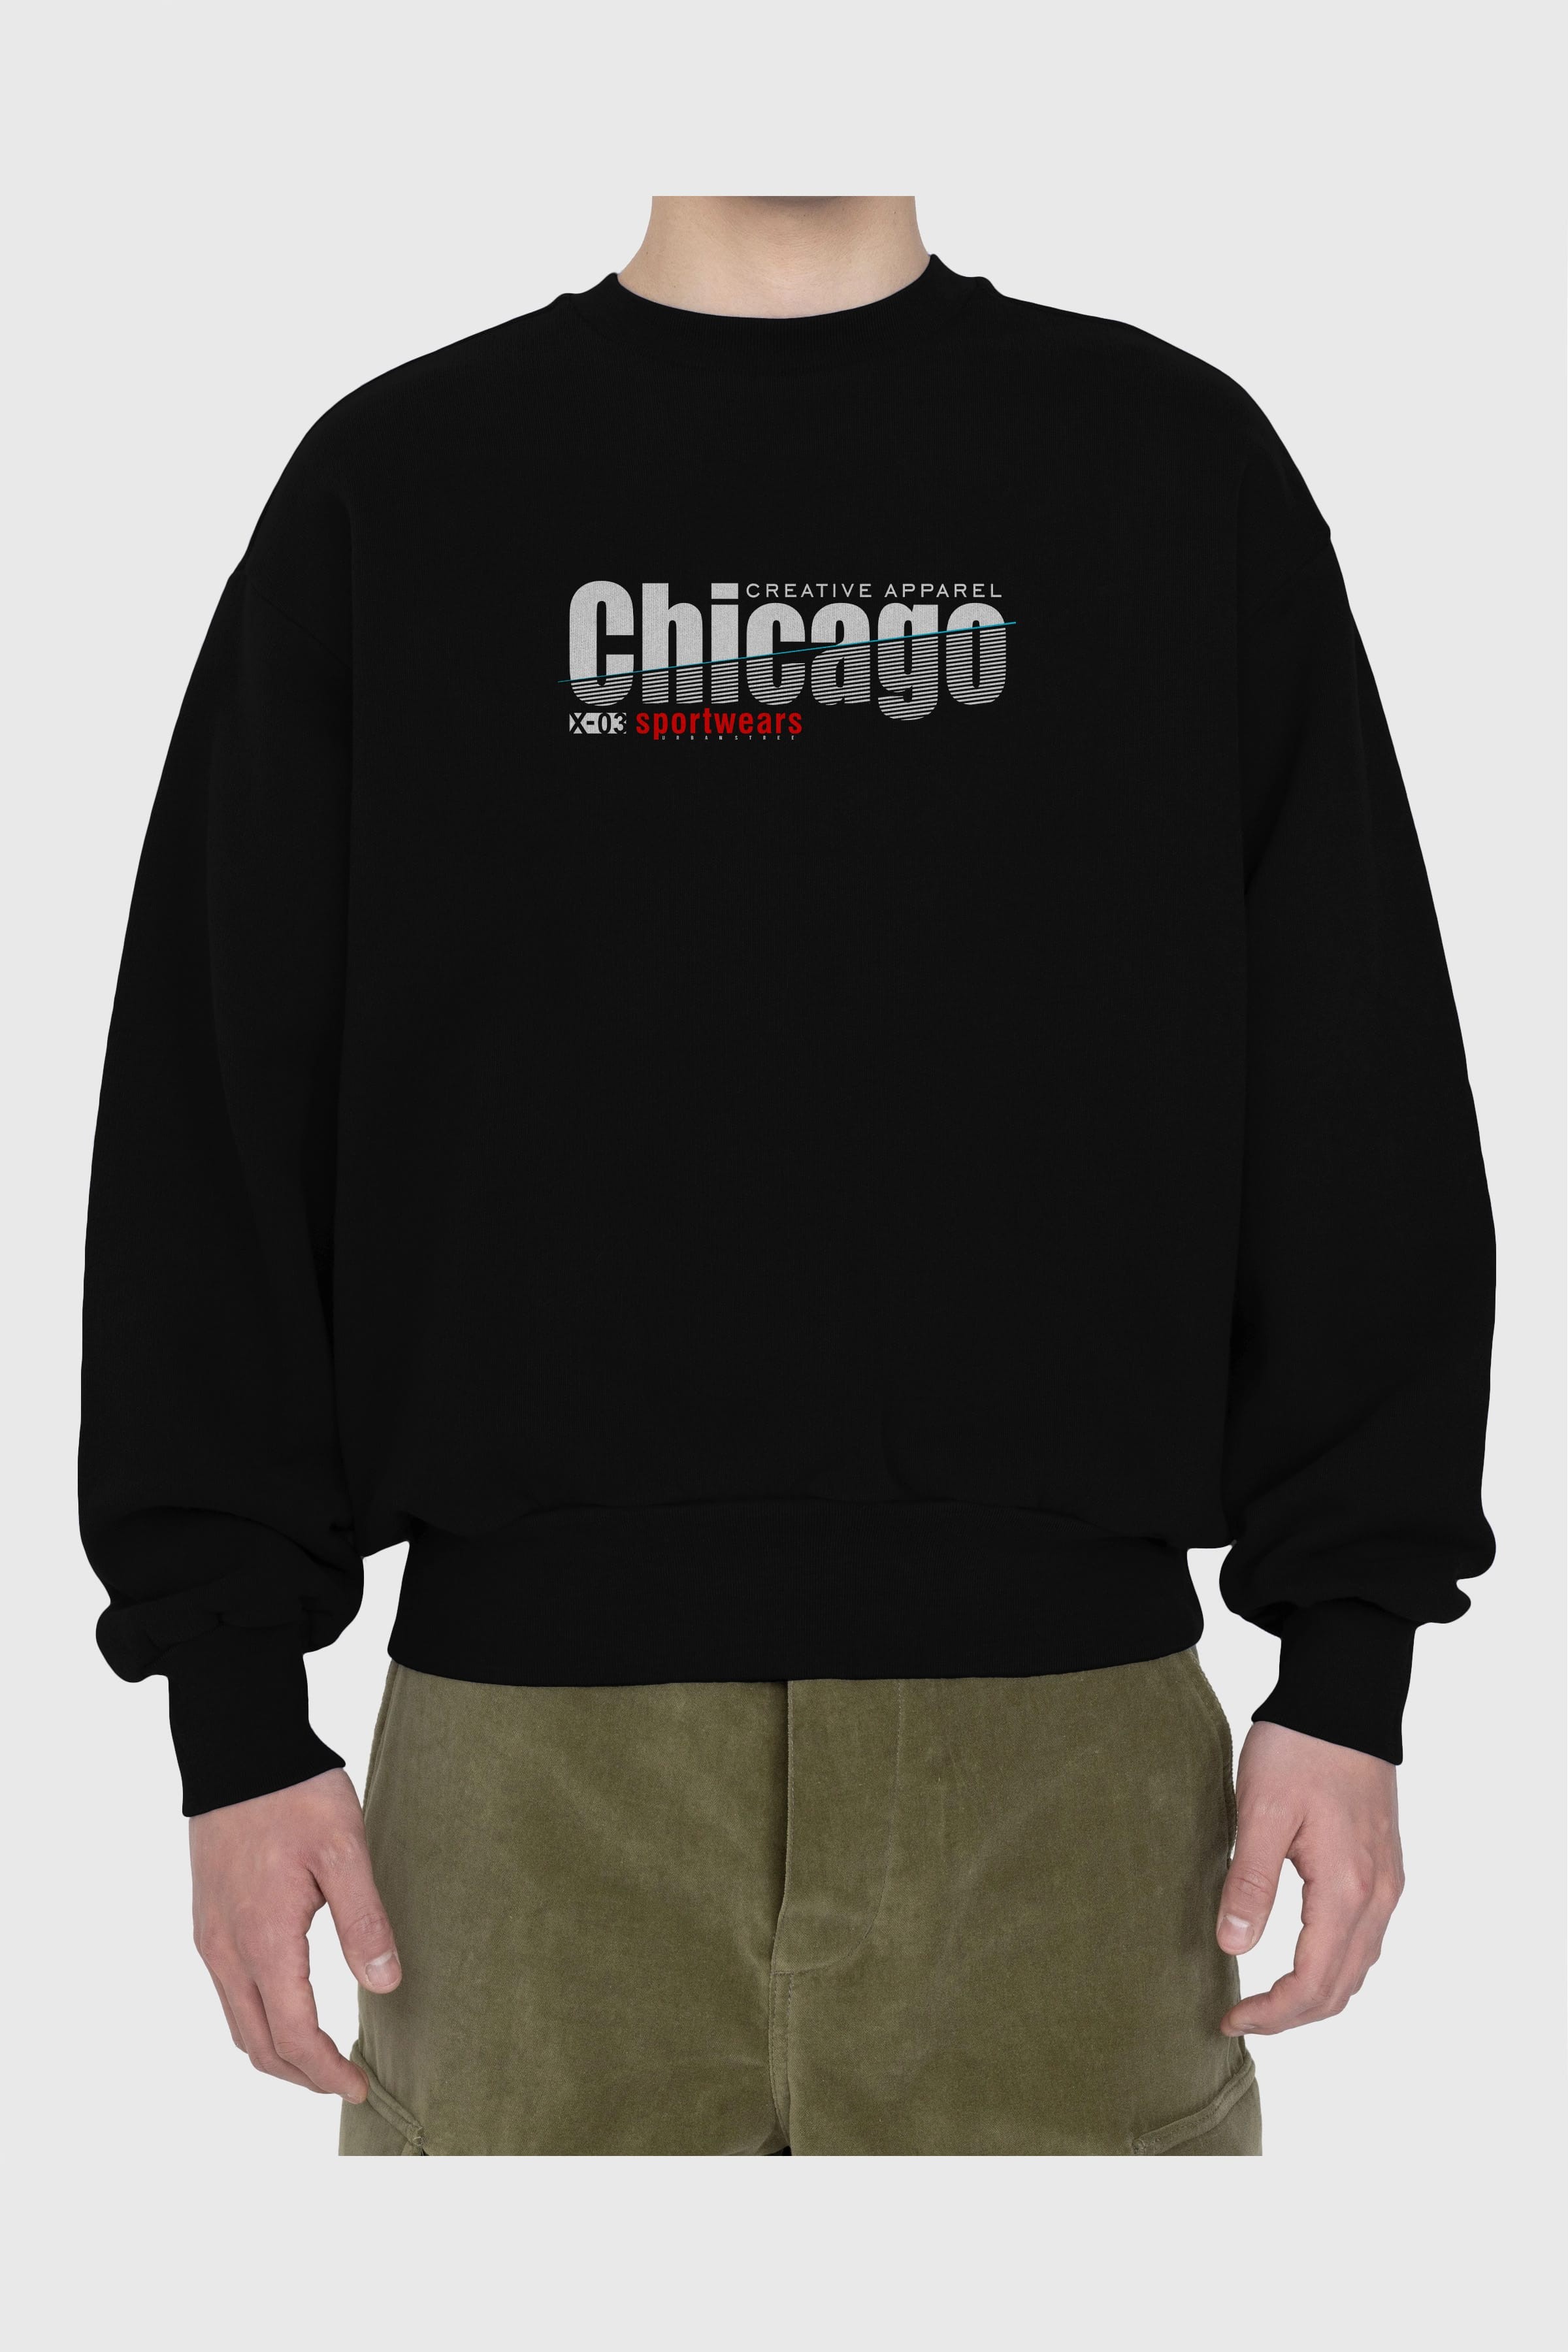 Chicago Sport Ön Baskılı Oversize Sweatshirt Erkek Kadın Unisex